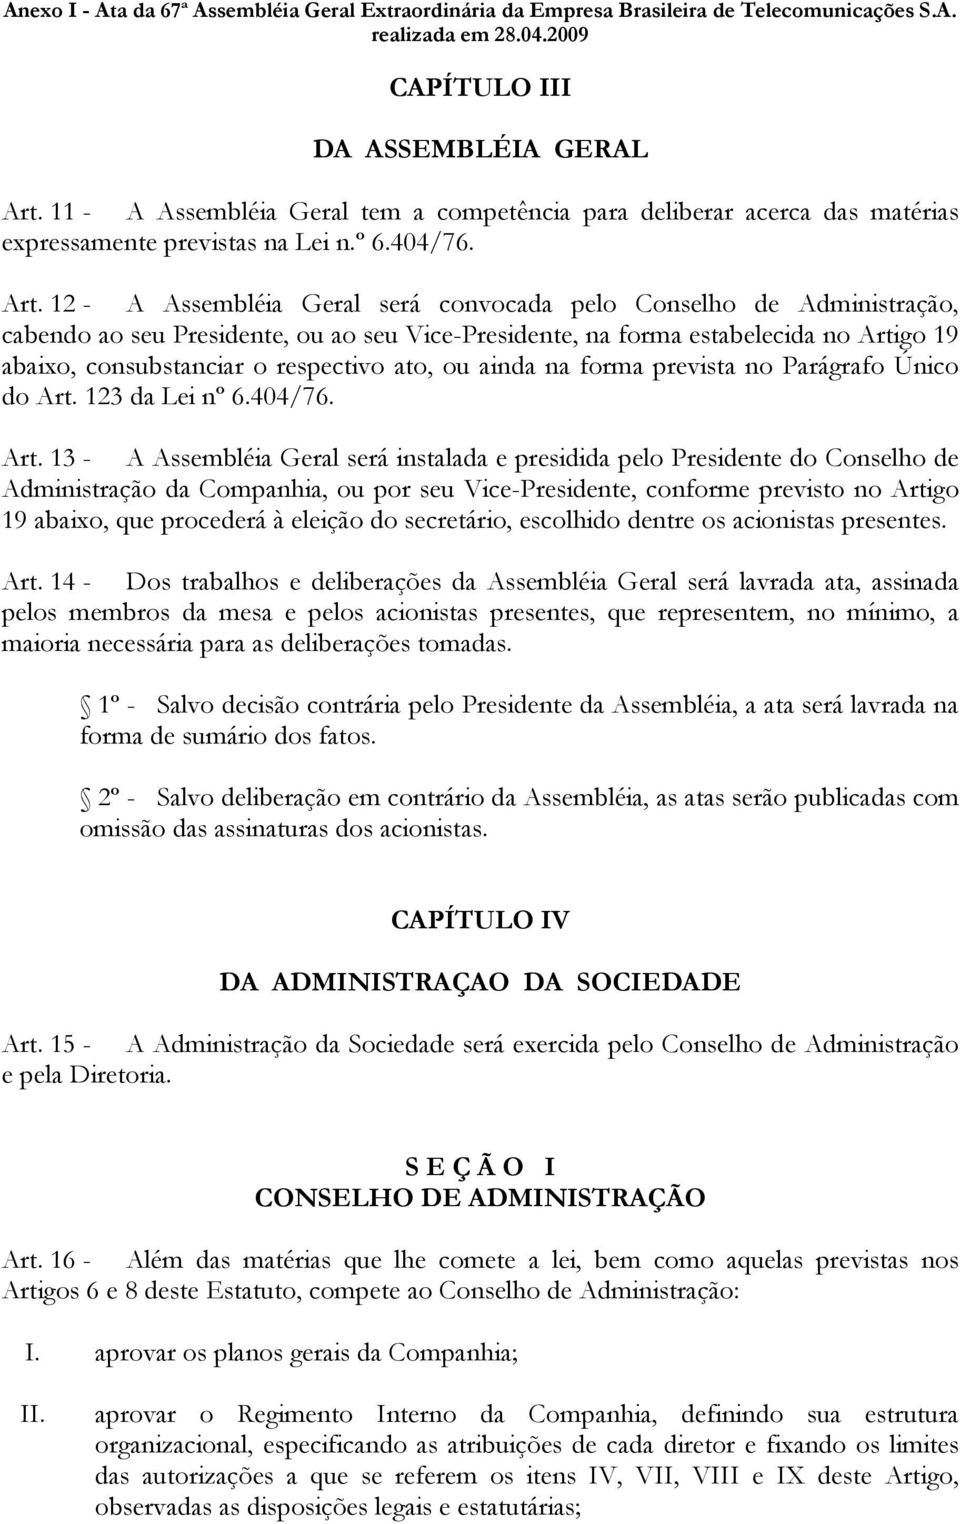 12 - A Assembléia Geral será convocada pelo Conselho de Administração, cabendo ao seu Presidente, ou ao seu Vice-Presidente, na forma estabelecida no Artigo 19 abaixo, consubstanciar o respectivo